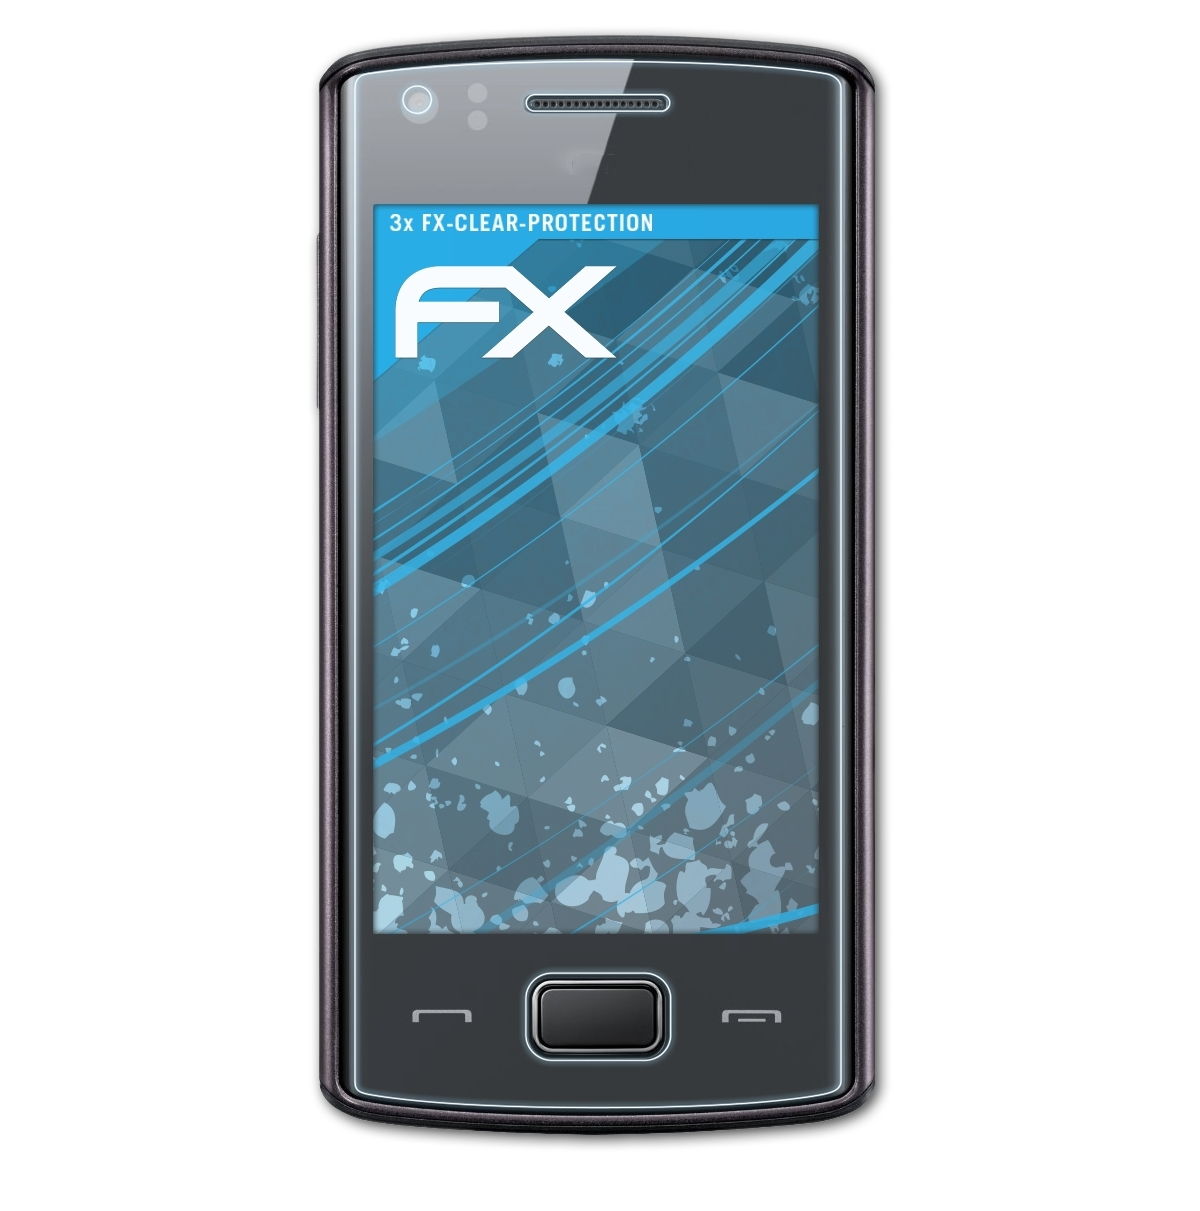 3x Wave FX-Clear 578 ATFOLIX Displayschutz(für Samsung (GT-S5780))